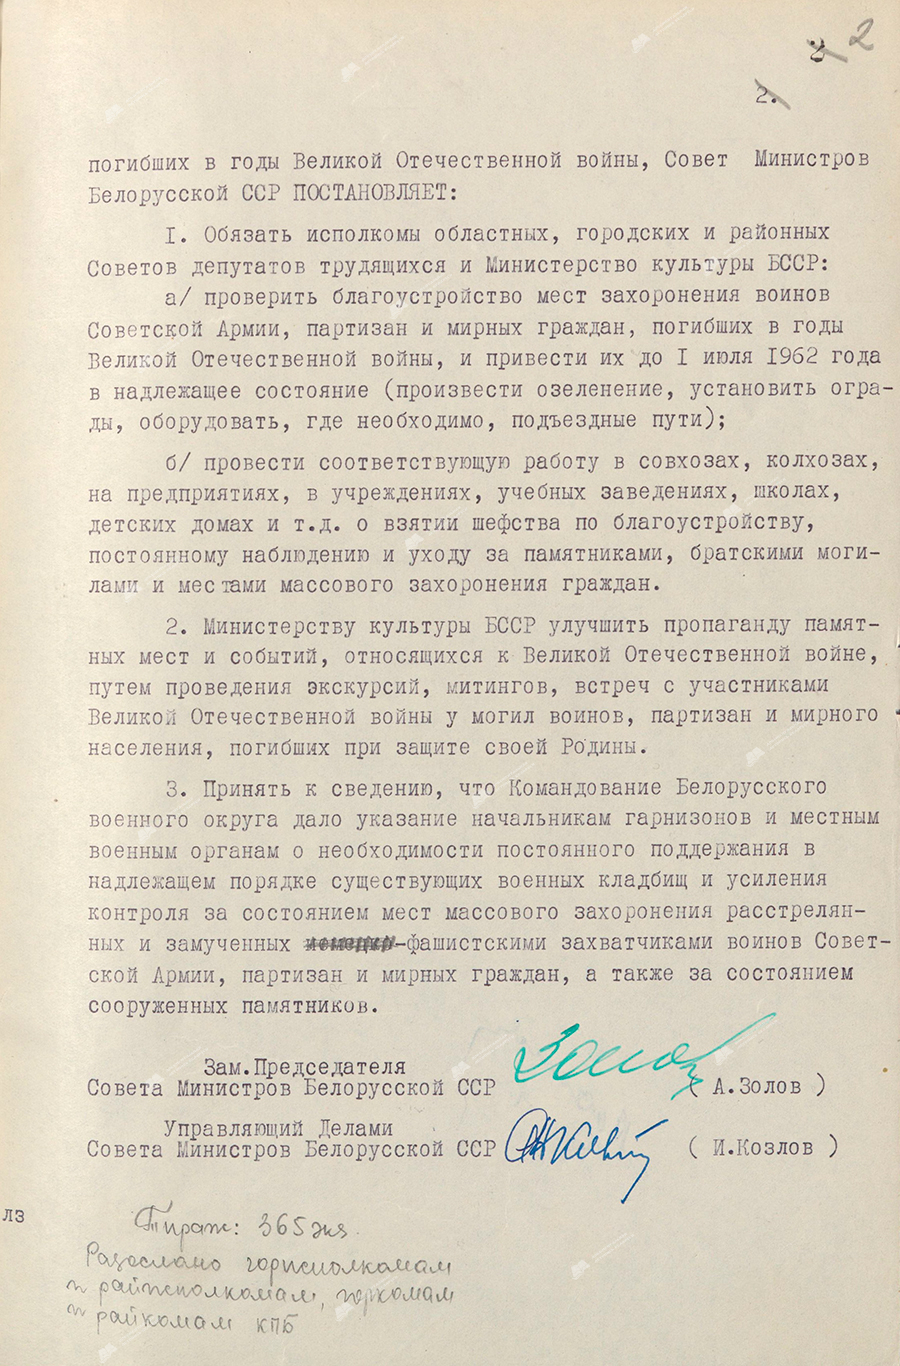 Resolution Nr. 674 des Ministerrates der BSSR «Über die ordnungsgemäße Instandhaltung von Denkmälern und Grabstätten von Soldaten der Sowjetarmee, Partisanen und Zivilisten, die während des Großen Vaterländischen Krieges (1941 – 1945) starben»-с. 1